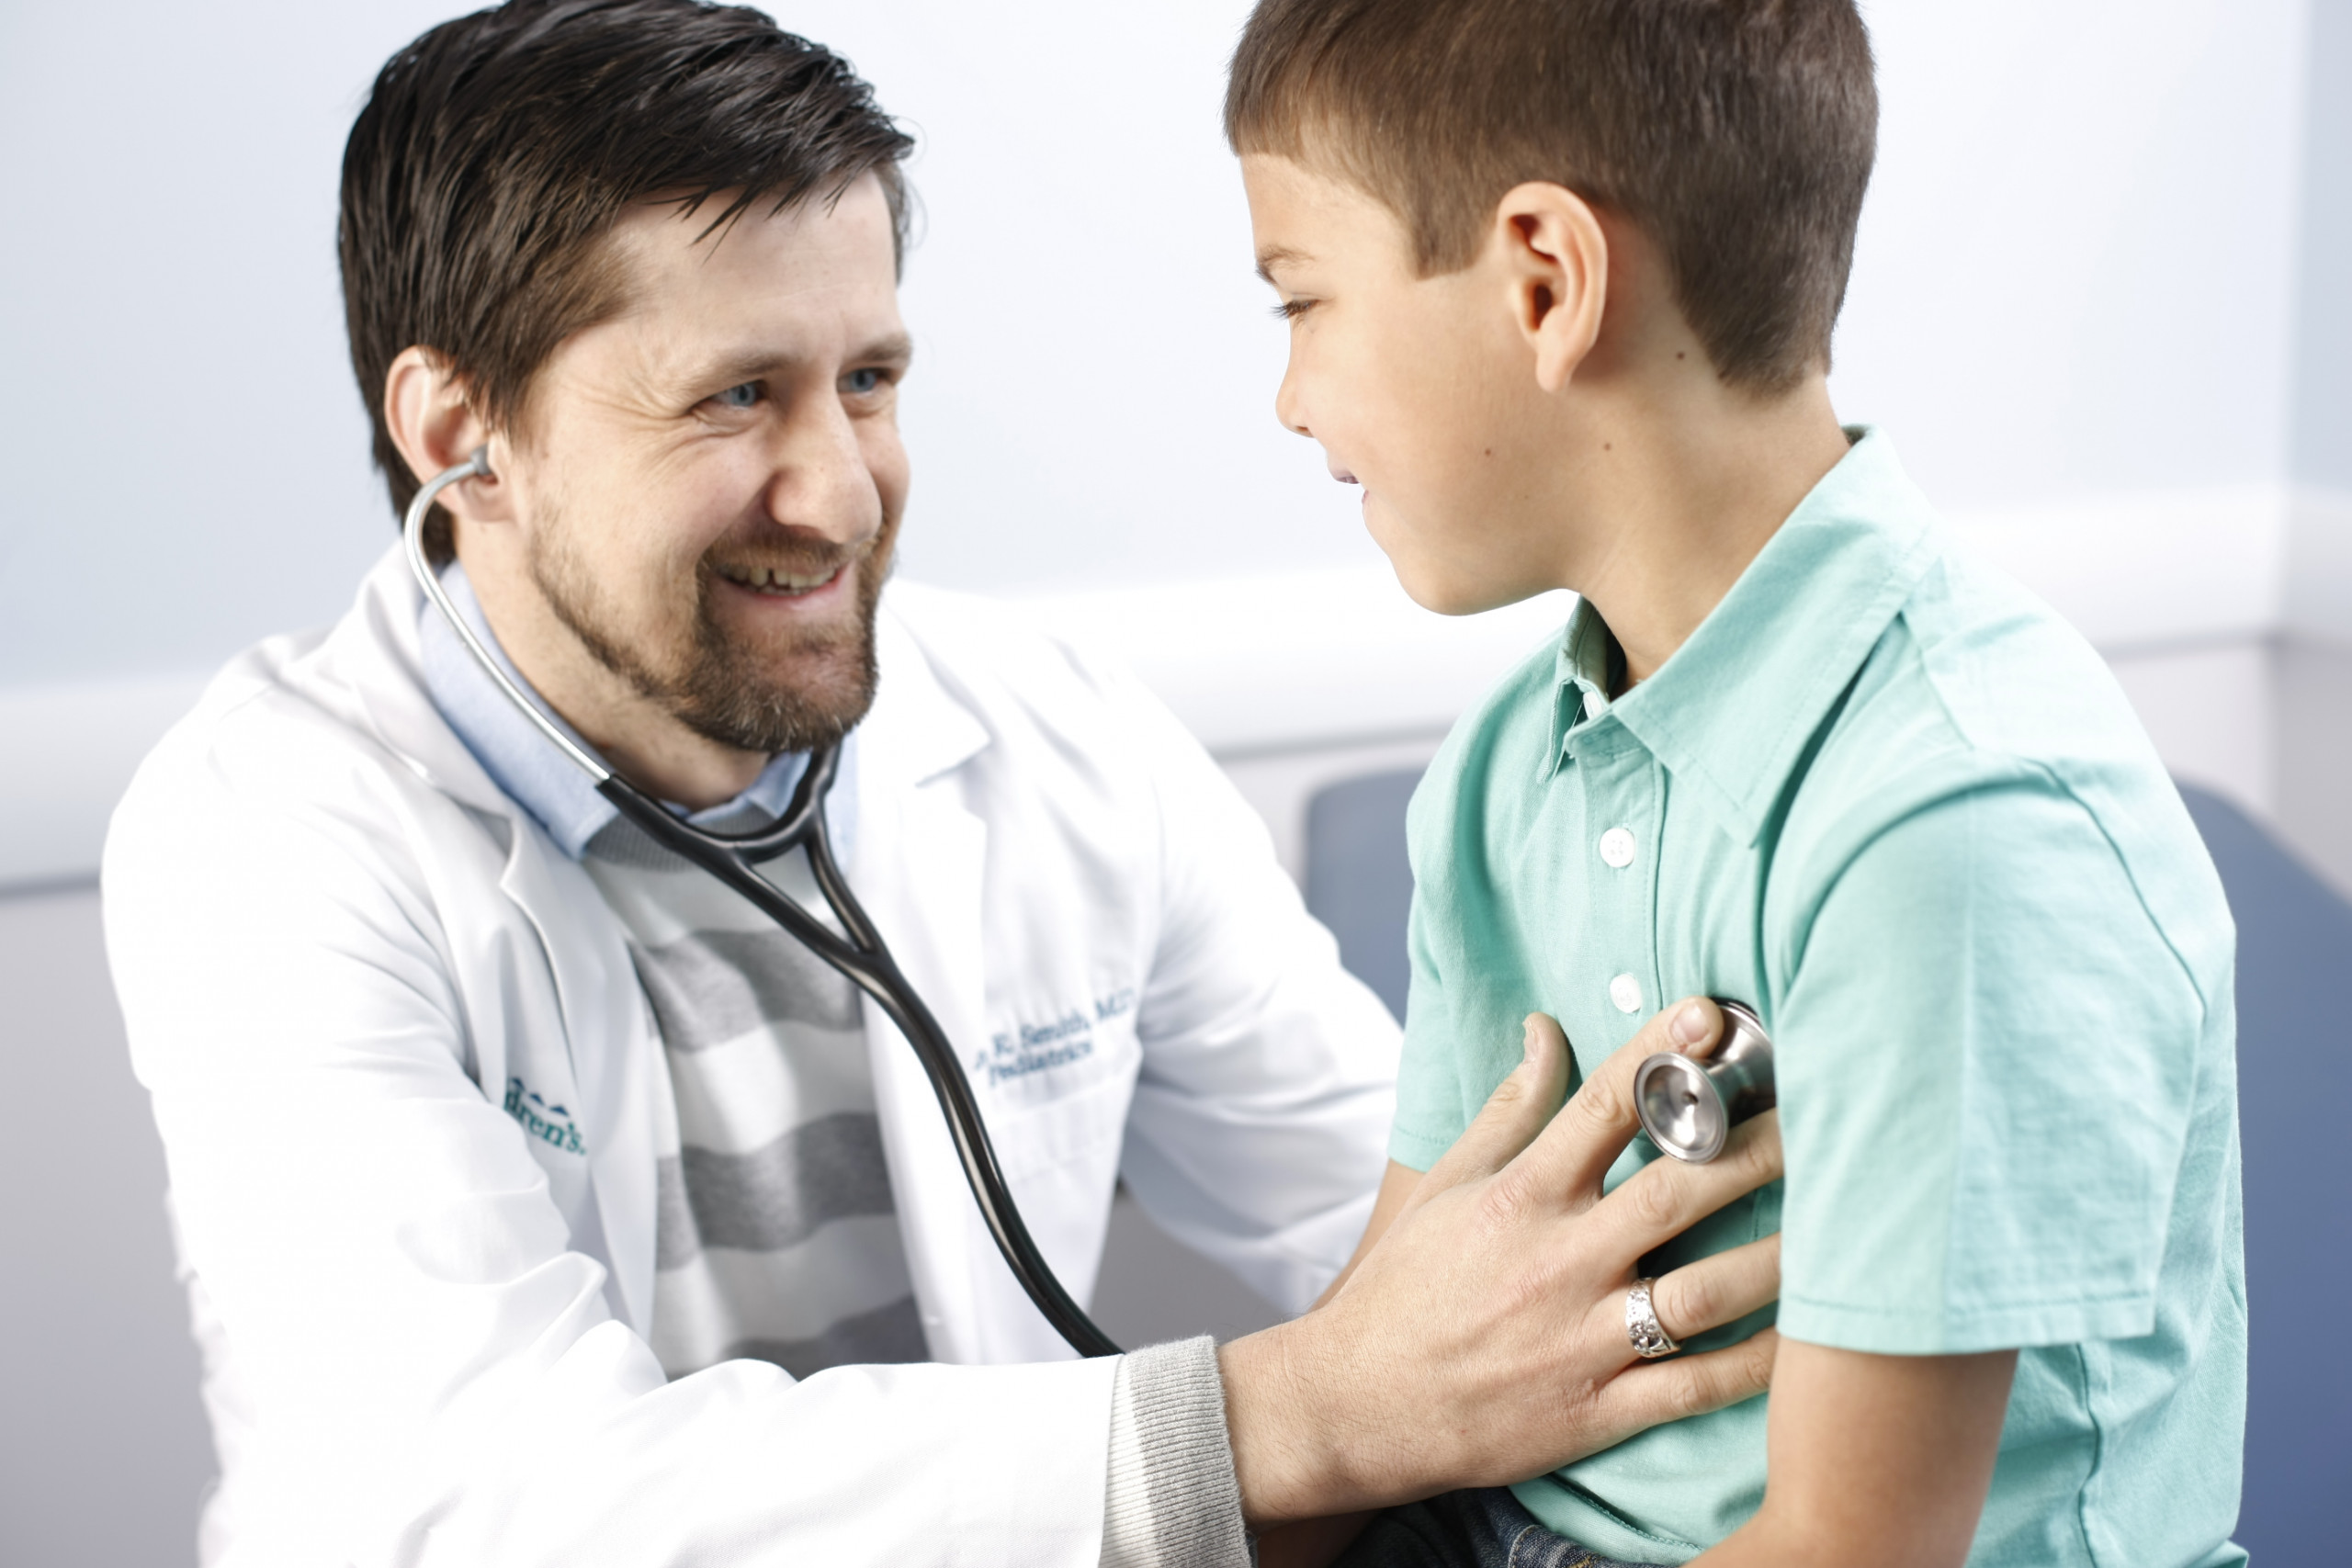 Why am I a pediatrician?